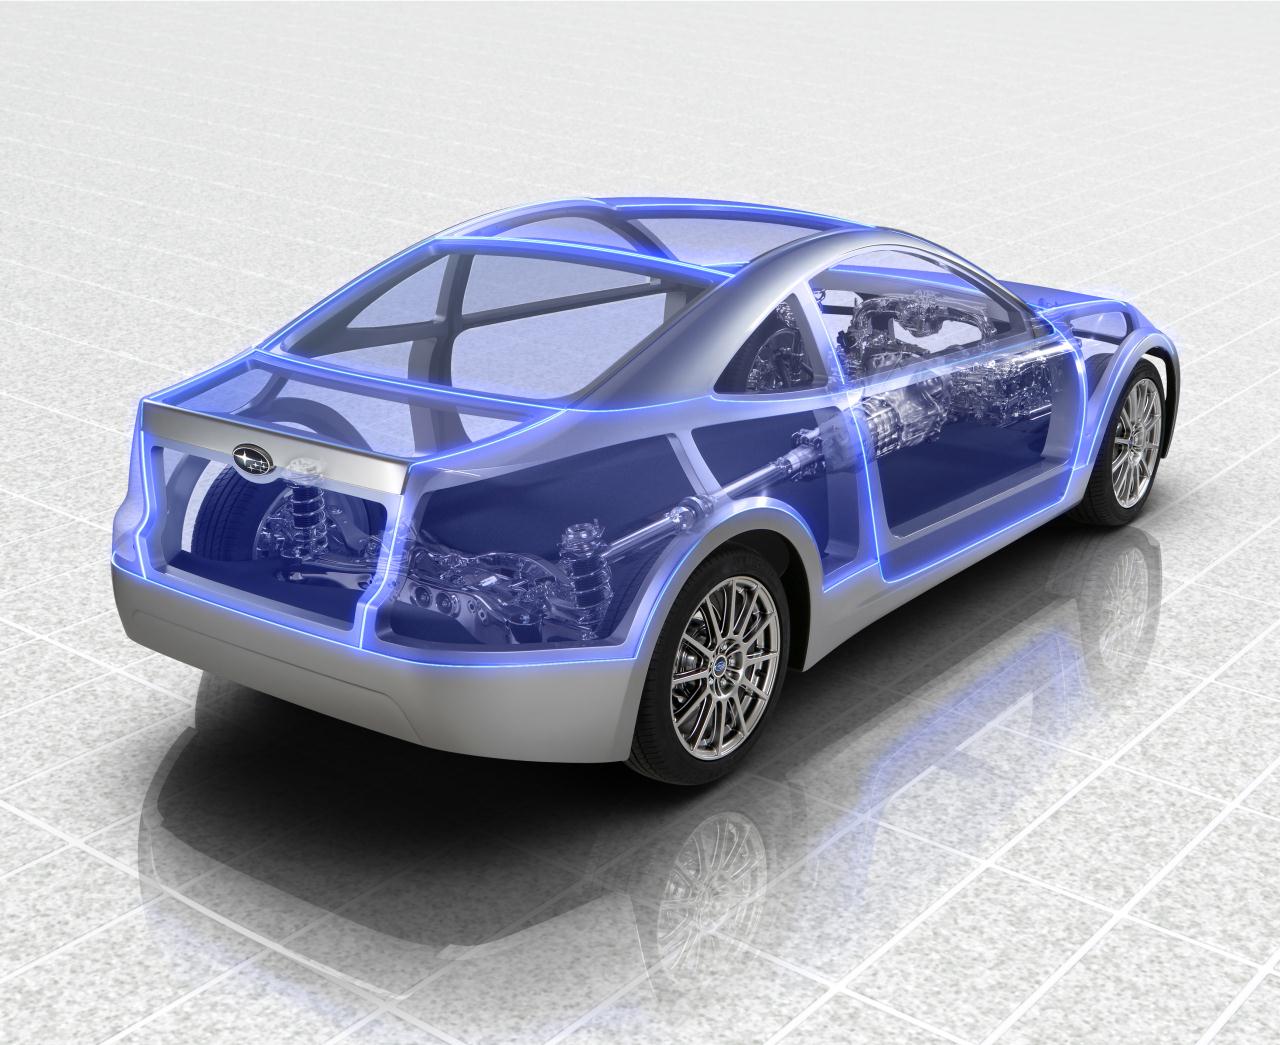 Subaru Boxer Sports Car Architecture, 2011